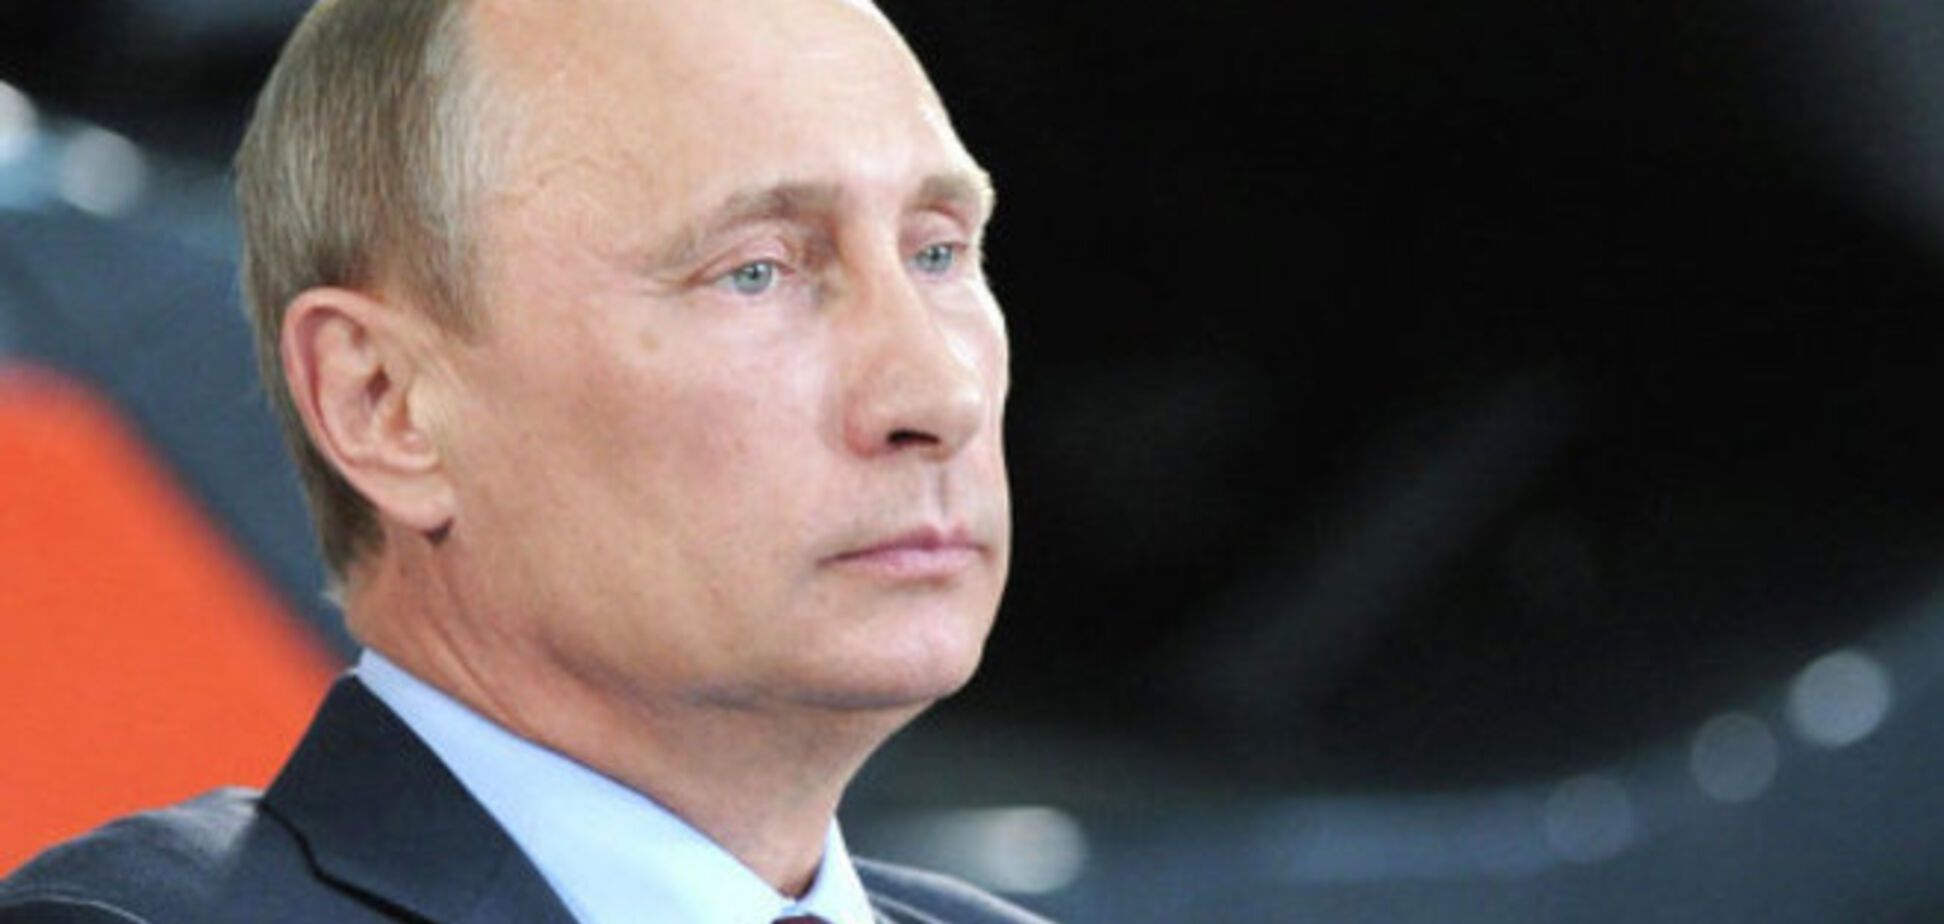 Путин отказался поднимать вопрос санкций против России на саммите G-20